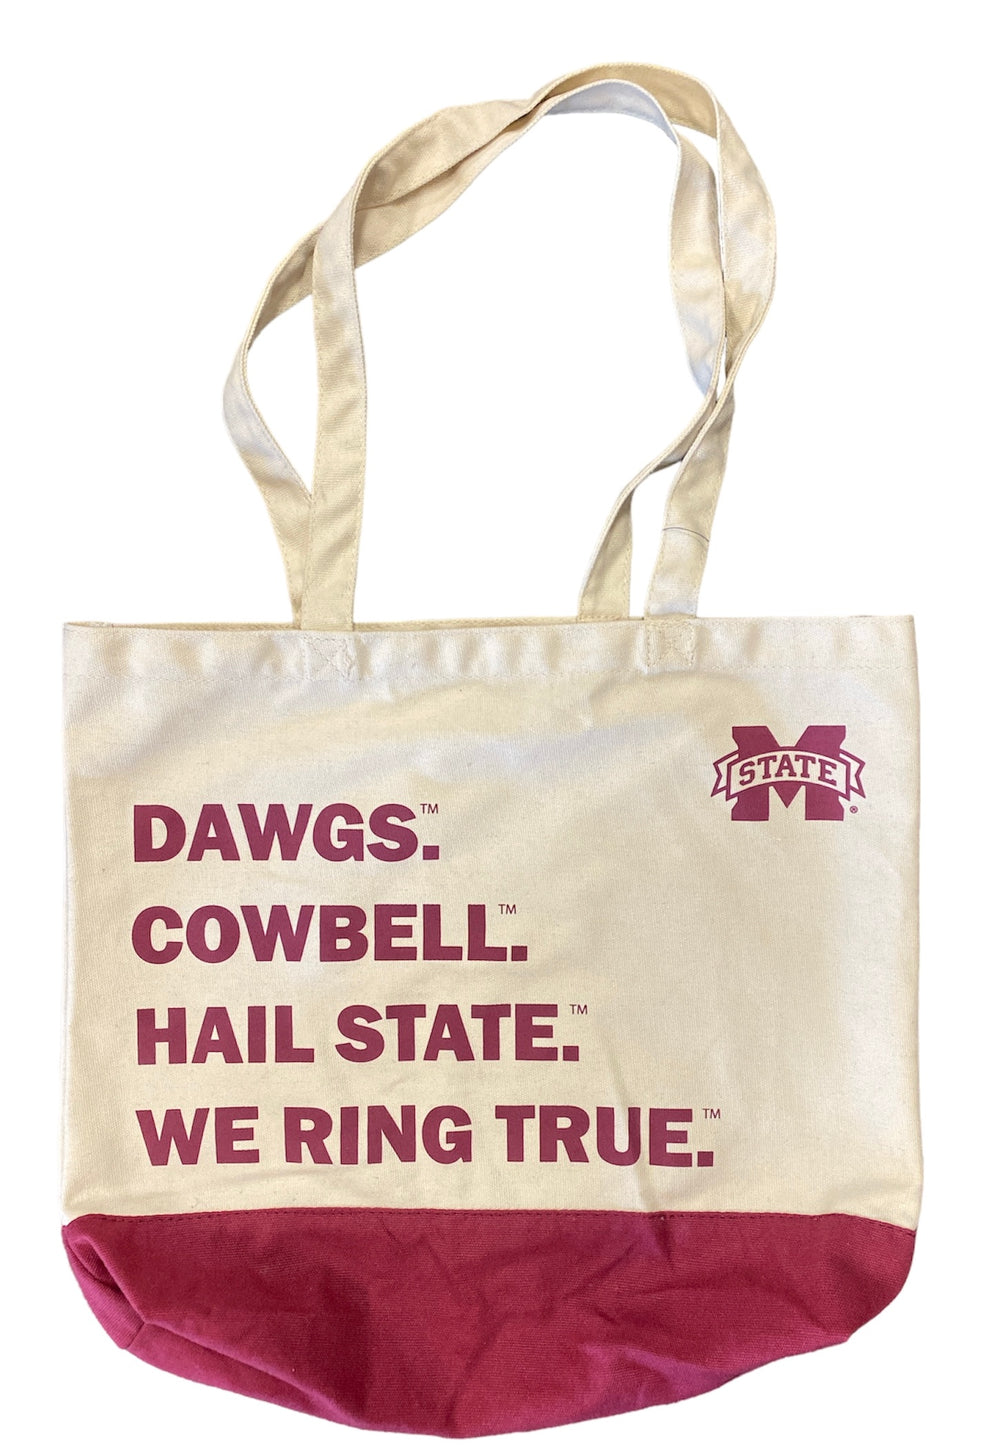 MSU Favorite Things Tote Bag